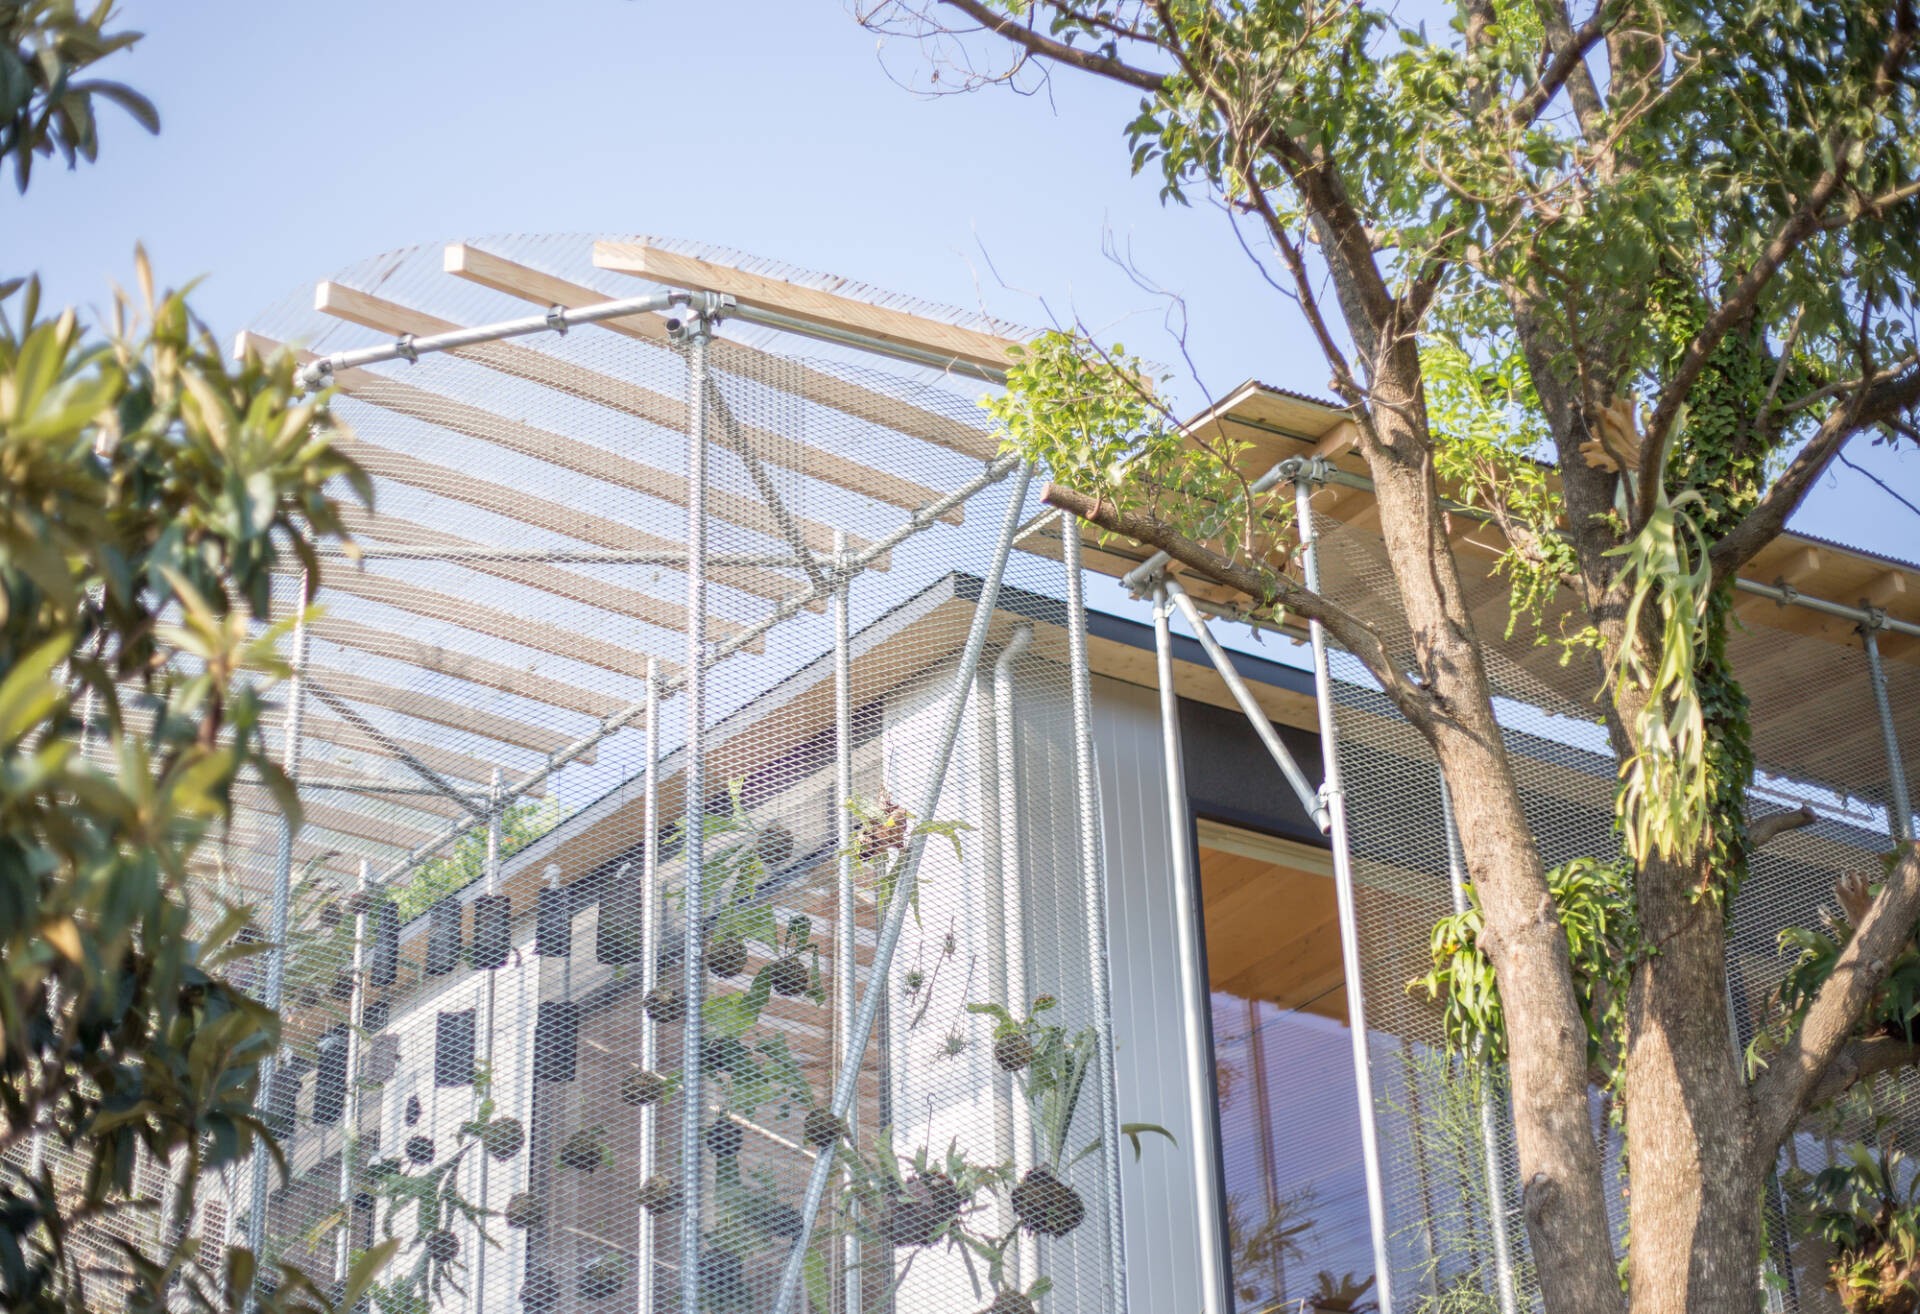 
Phần mái nhà kính được làm từ chất liệu trong giúp cho ánh nắng chiếu qua, phù hợp với các loại cây trồng nhiệt đới
